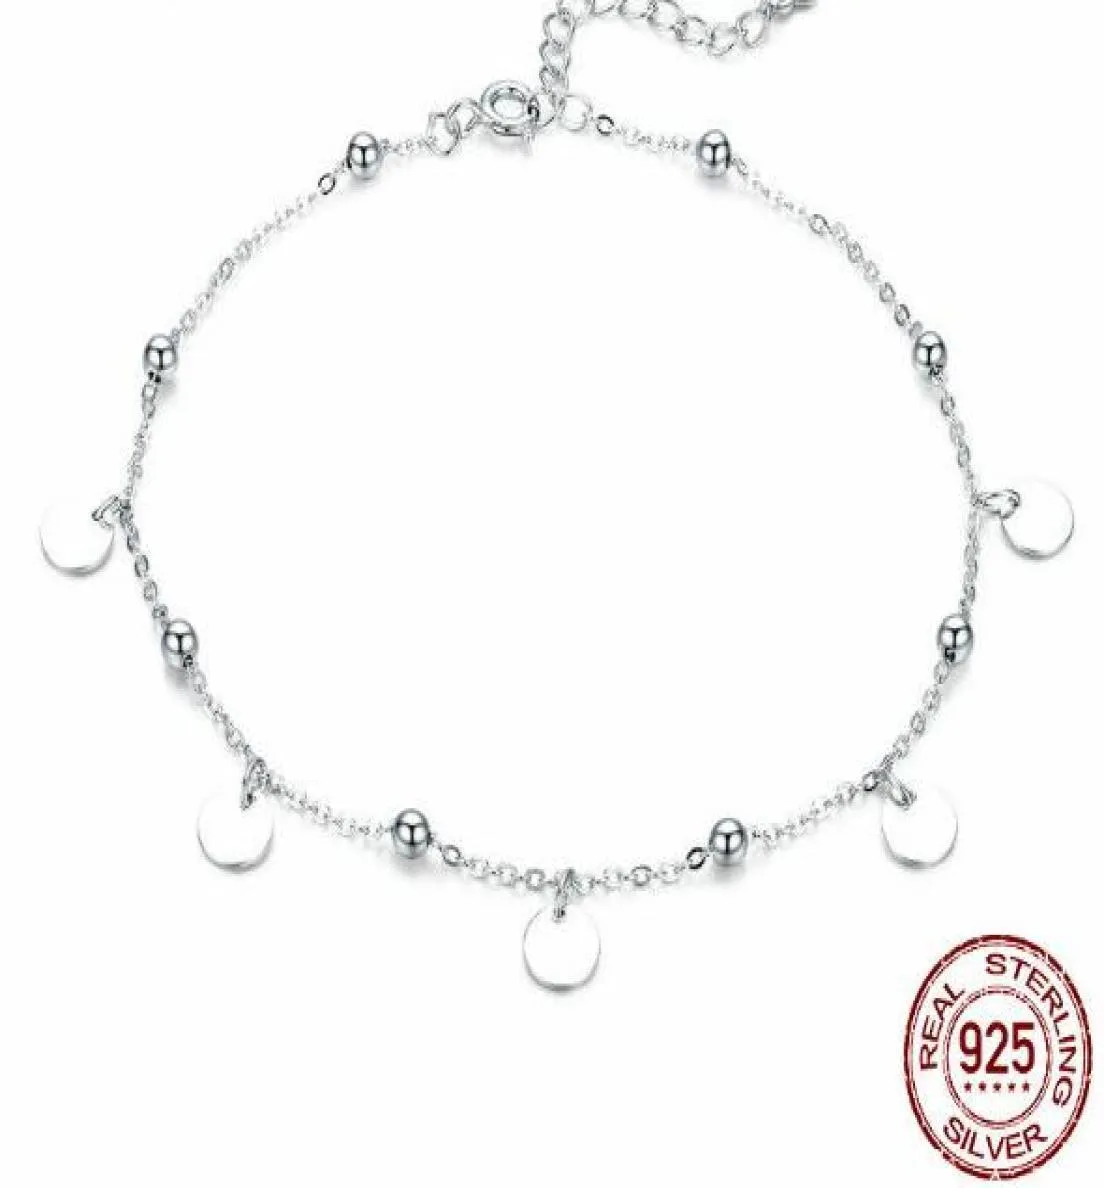 SPC2 Zonder doos Falling Petal Braceles voor dames Mode-sieraden Wit Emaille Bloem Kettingarmband Zilver 925 Sieraden7833953